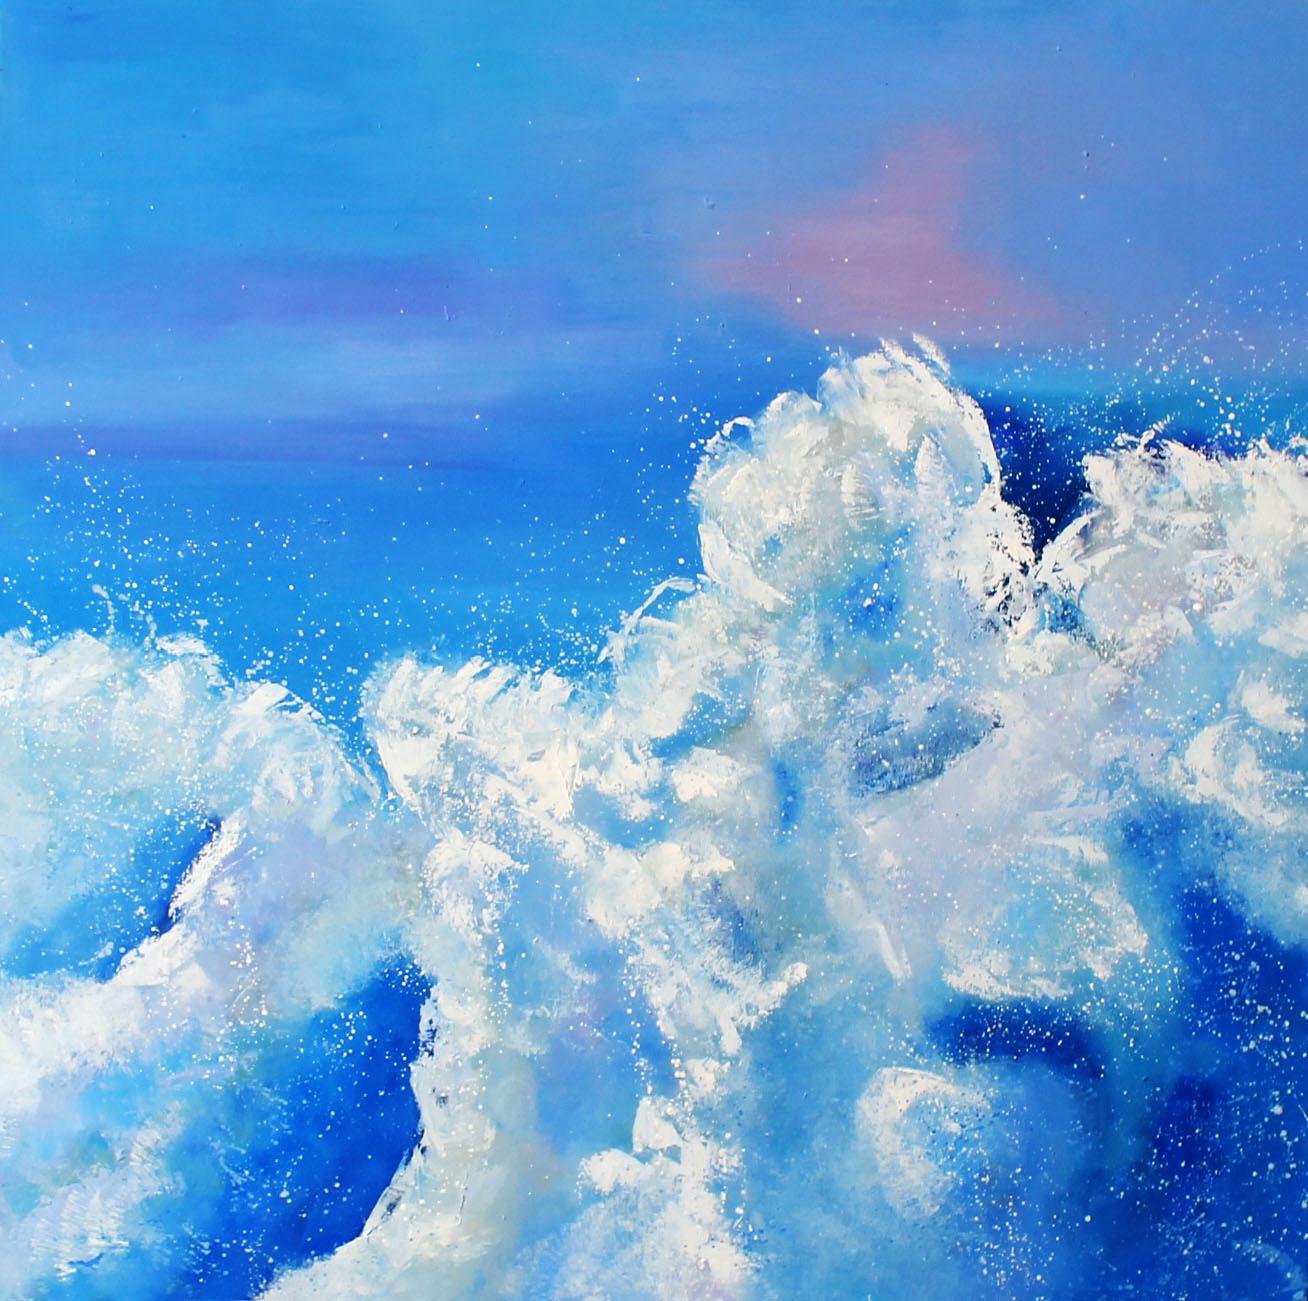 Cecilia Arrospide - Explosion en el Mar, Painting 2020